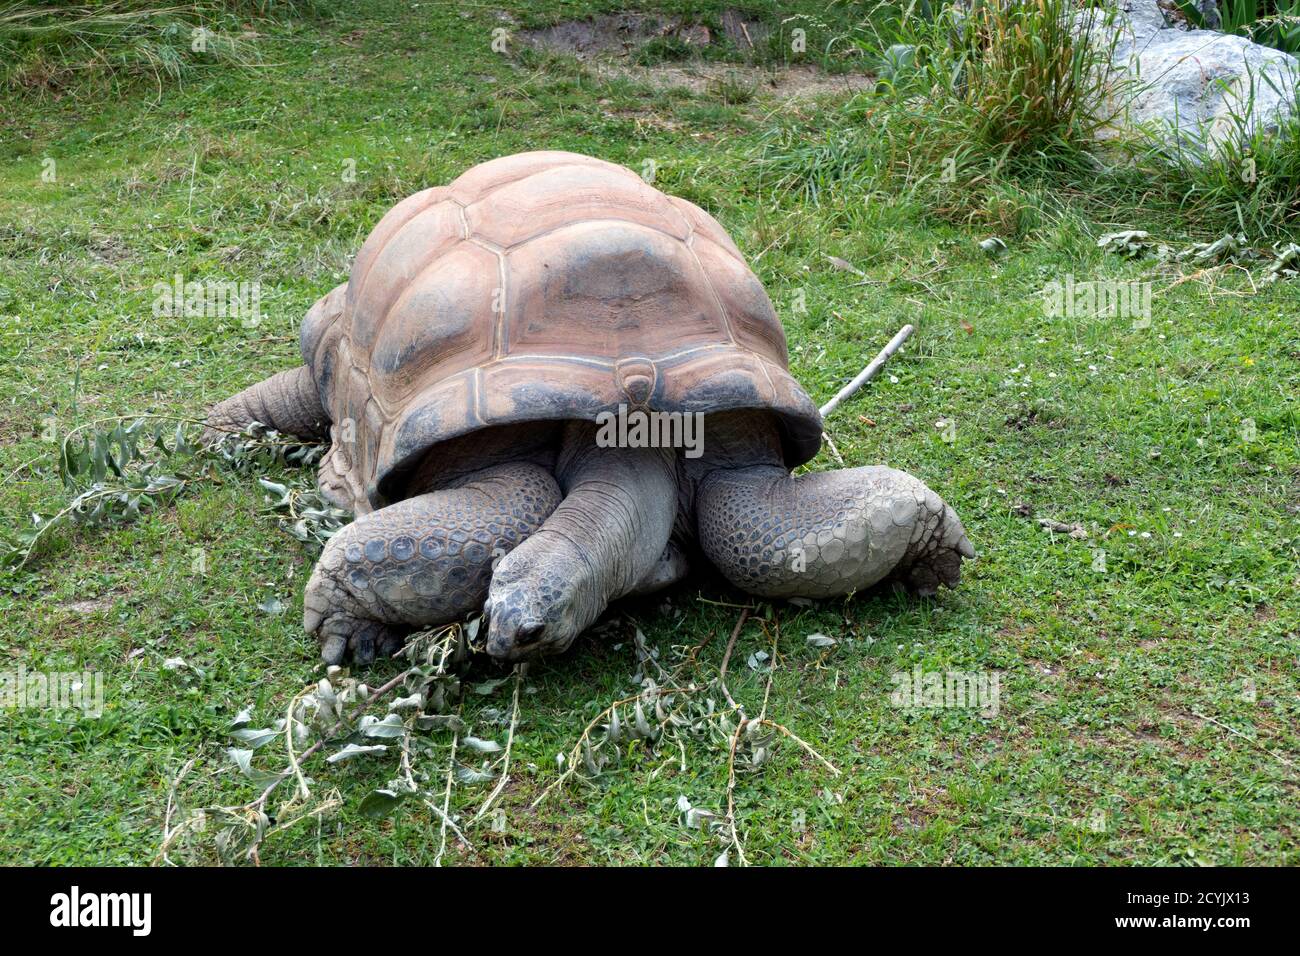 Aldabra Riesenschildkröte (Aldabrachelys gigantea) von den Seychellen im Wiener Zoo in Österreich, Europa. Tier, Reptil in zoologischen Gärten Käfig in WI Stockfoto